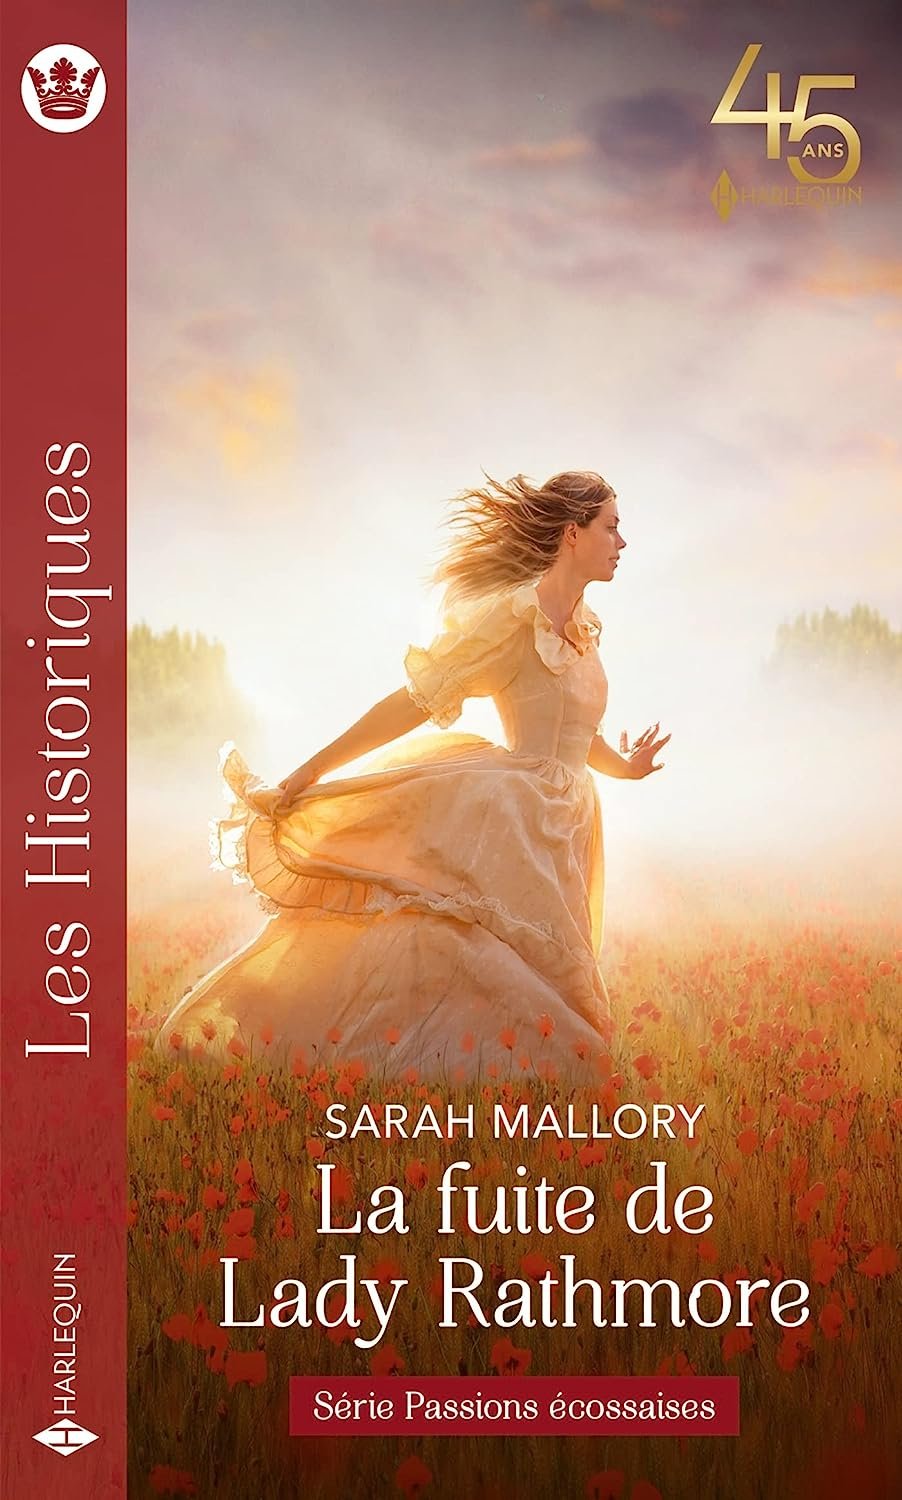 Sarah Mallory - La fuite de Lady Rathmore